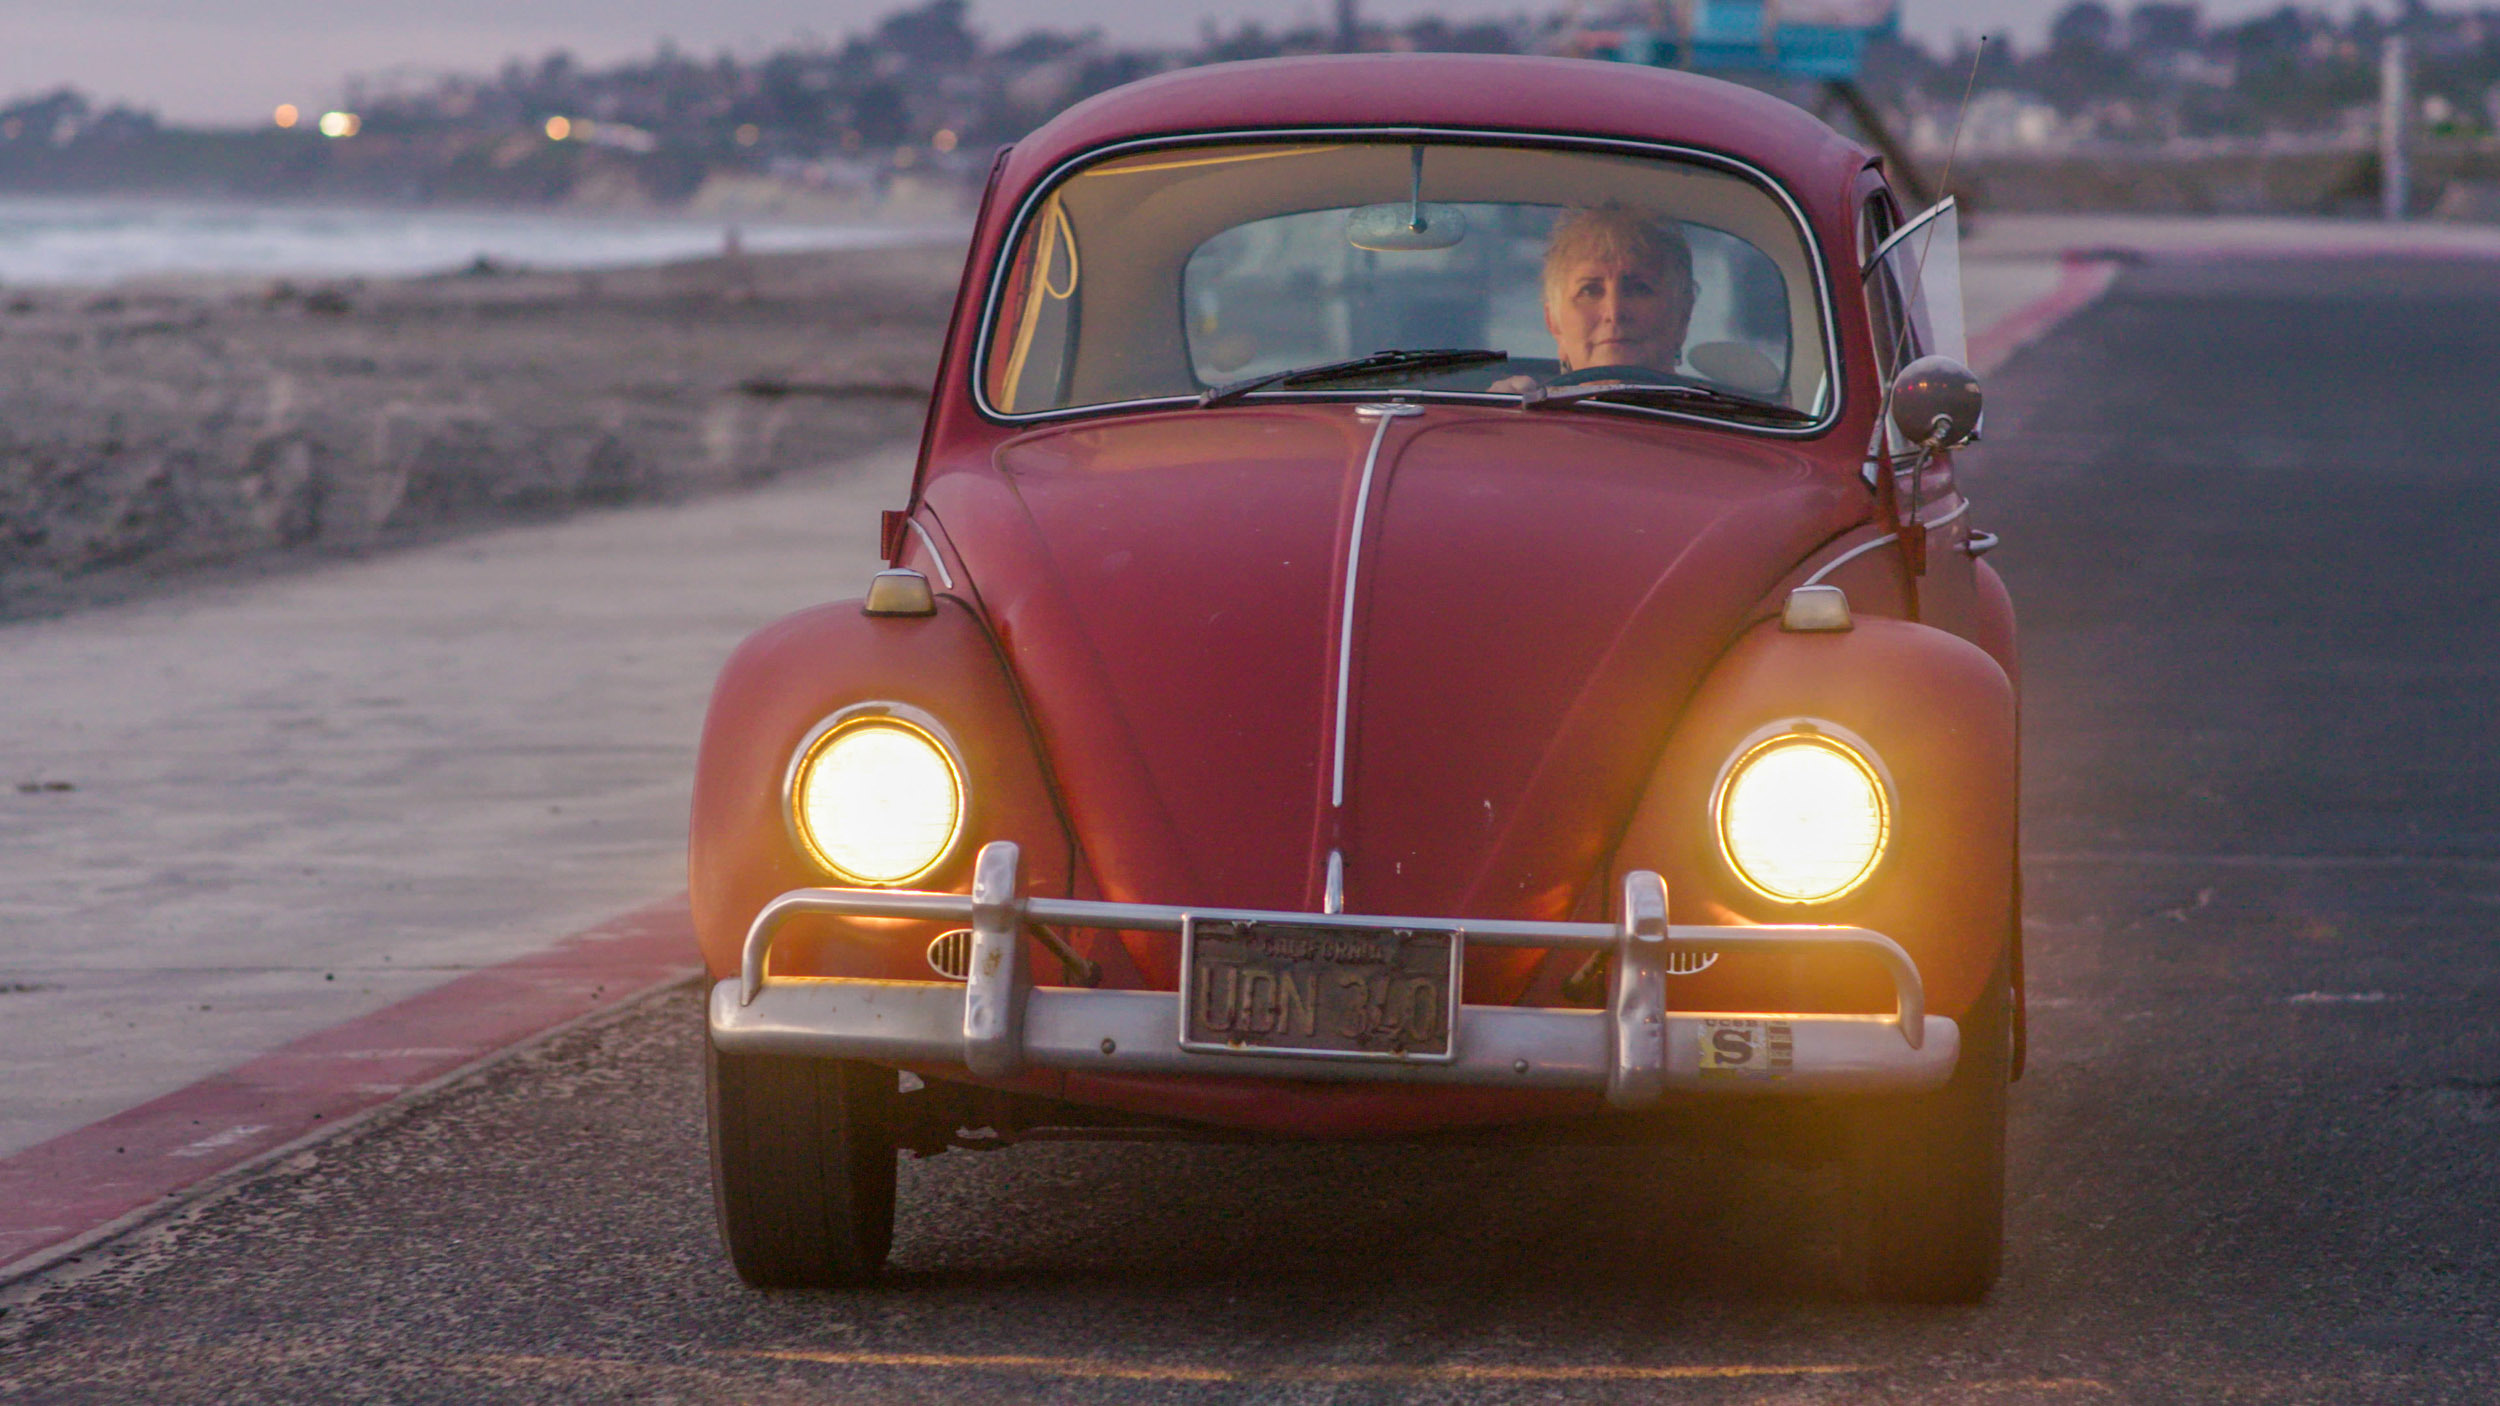 Kathleen conduce a 'Annie' por la costa de California, antes de la restauración. (Volkswagen)